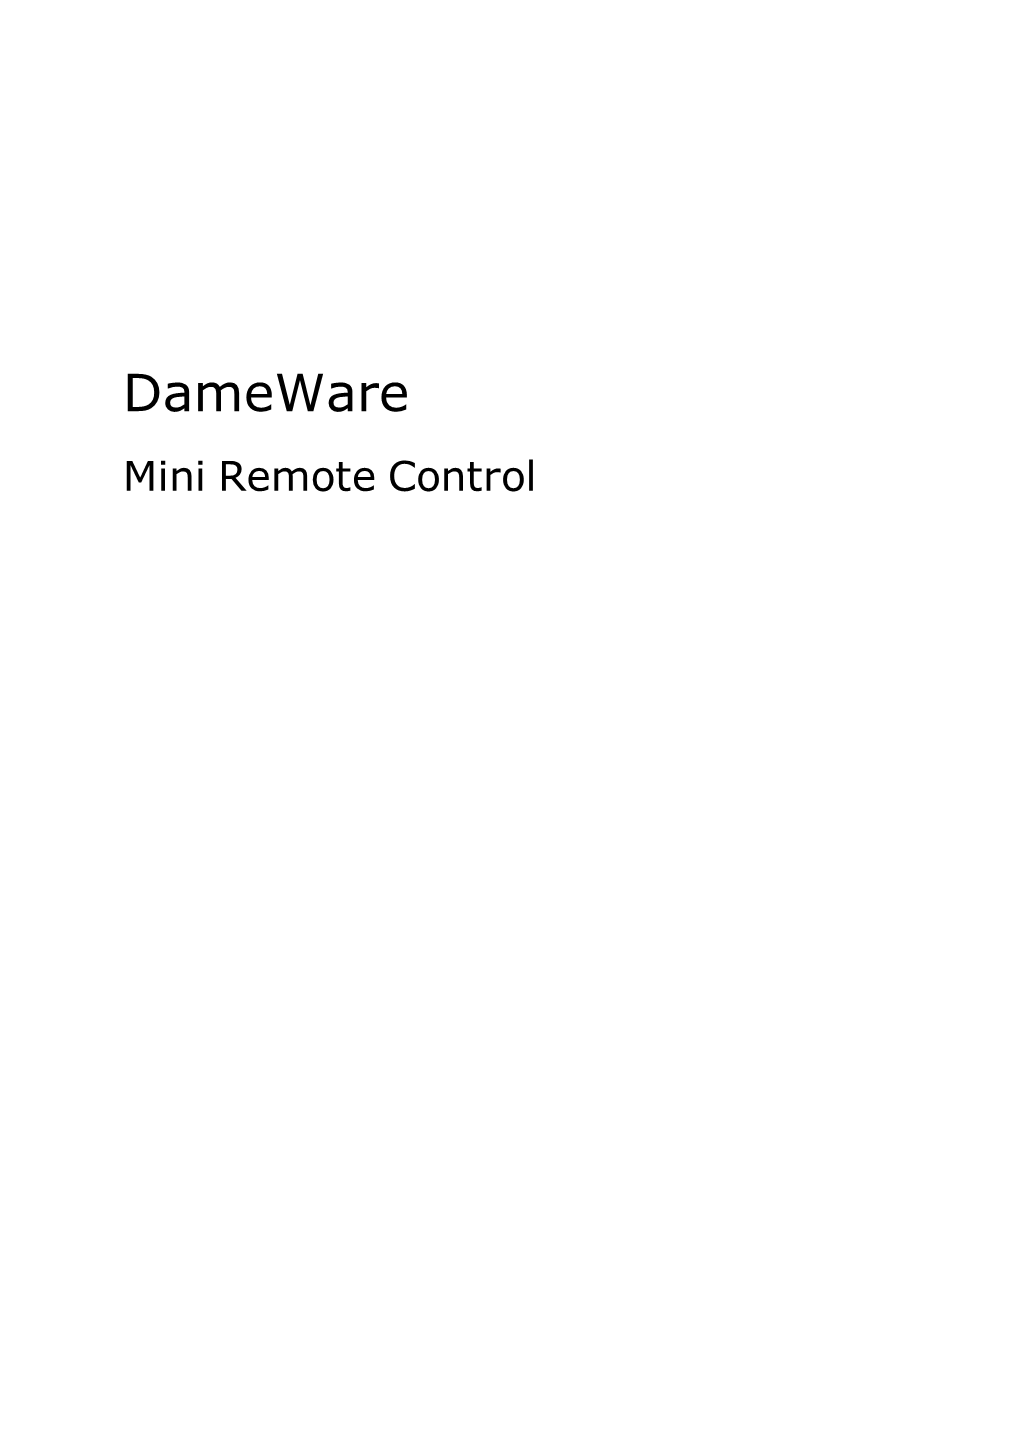 Dameware Mini Remote Control Reference Guide